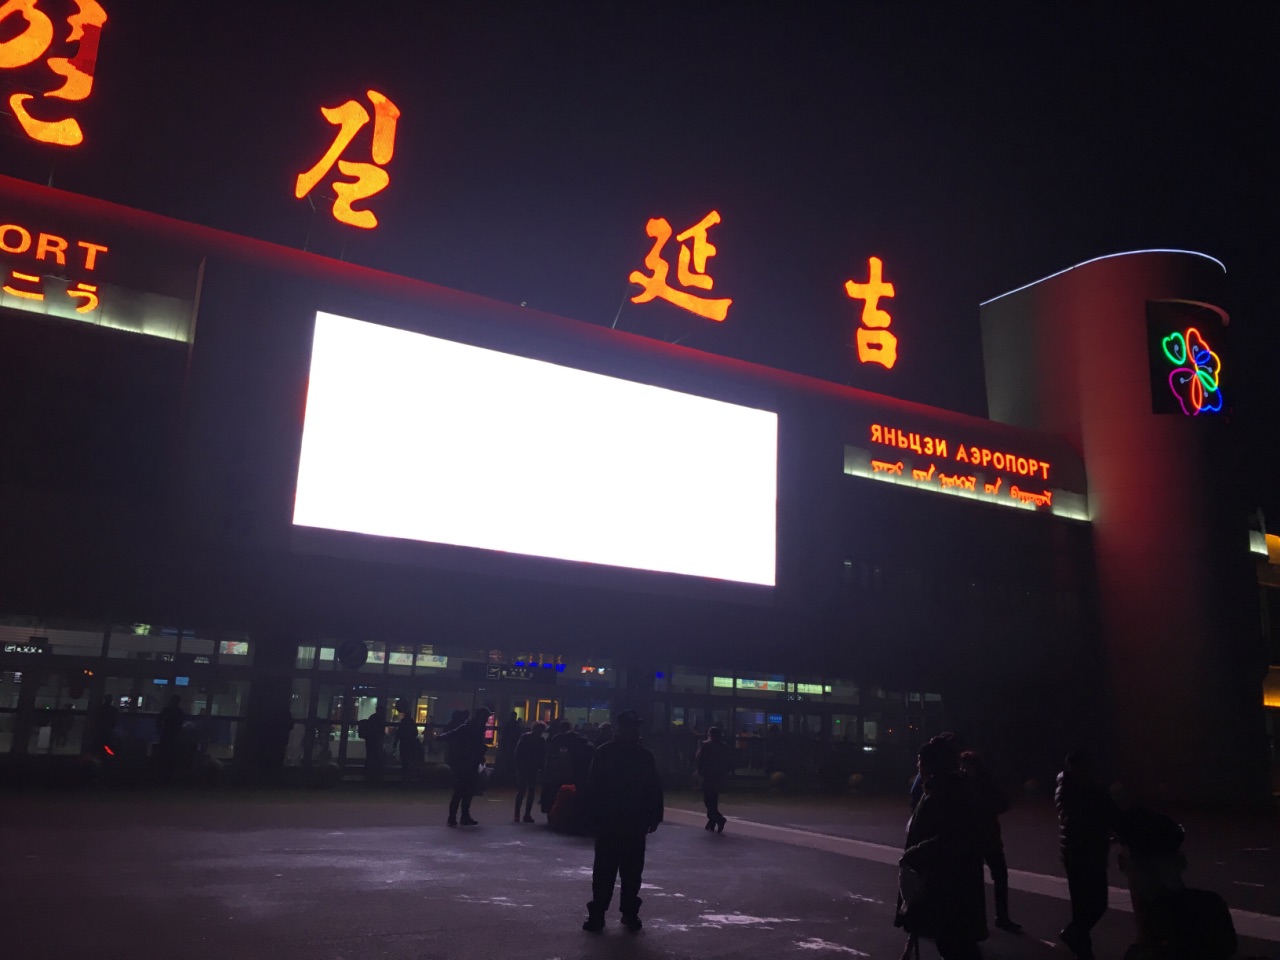 延吉朝阳川机场